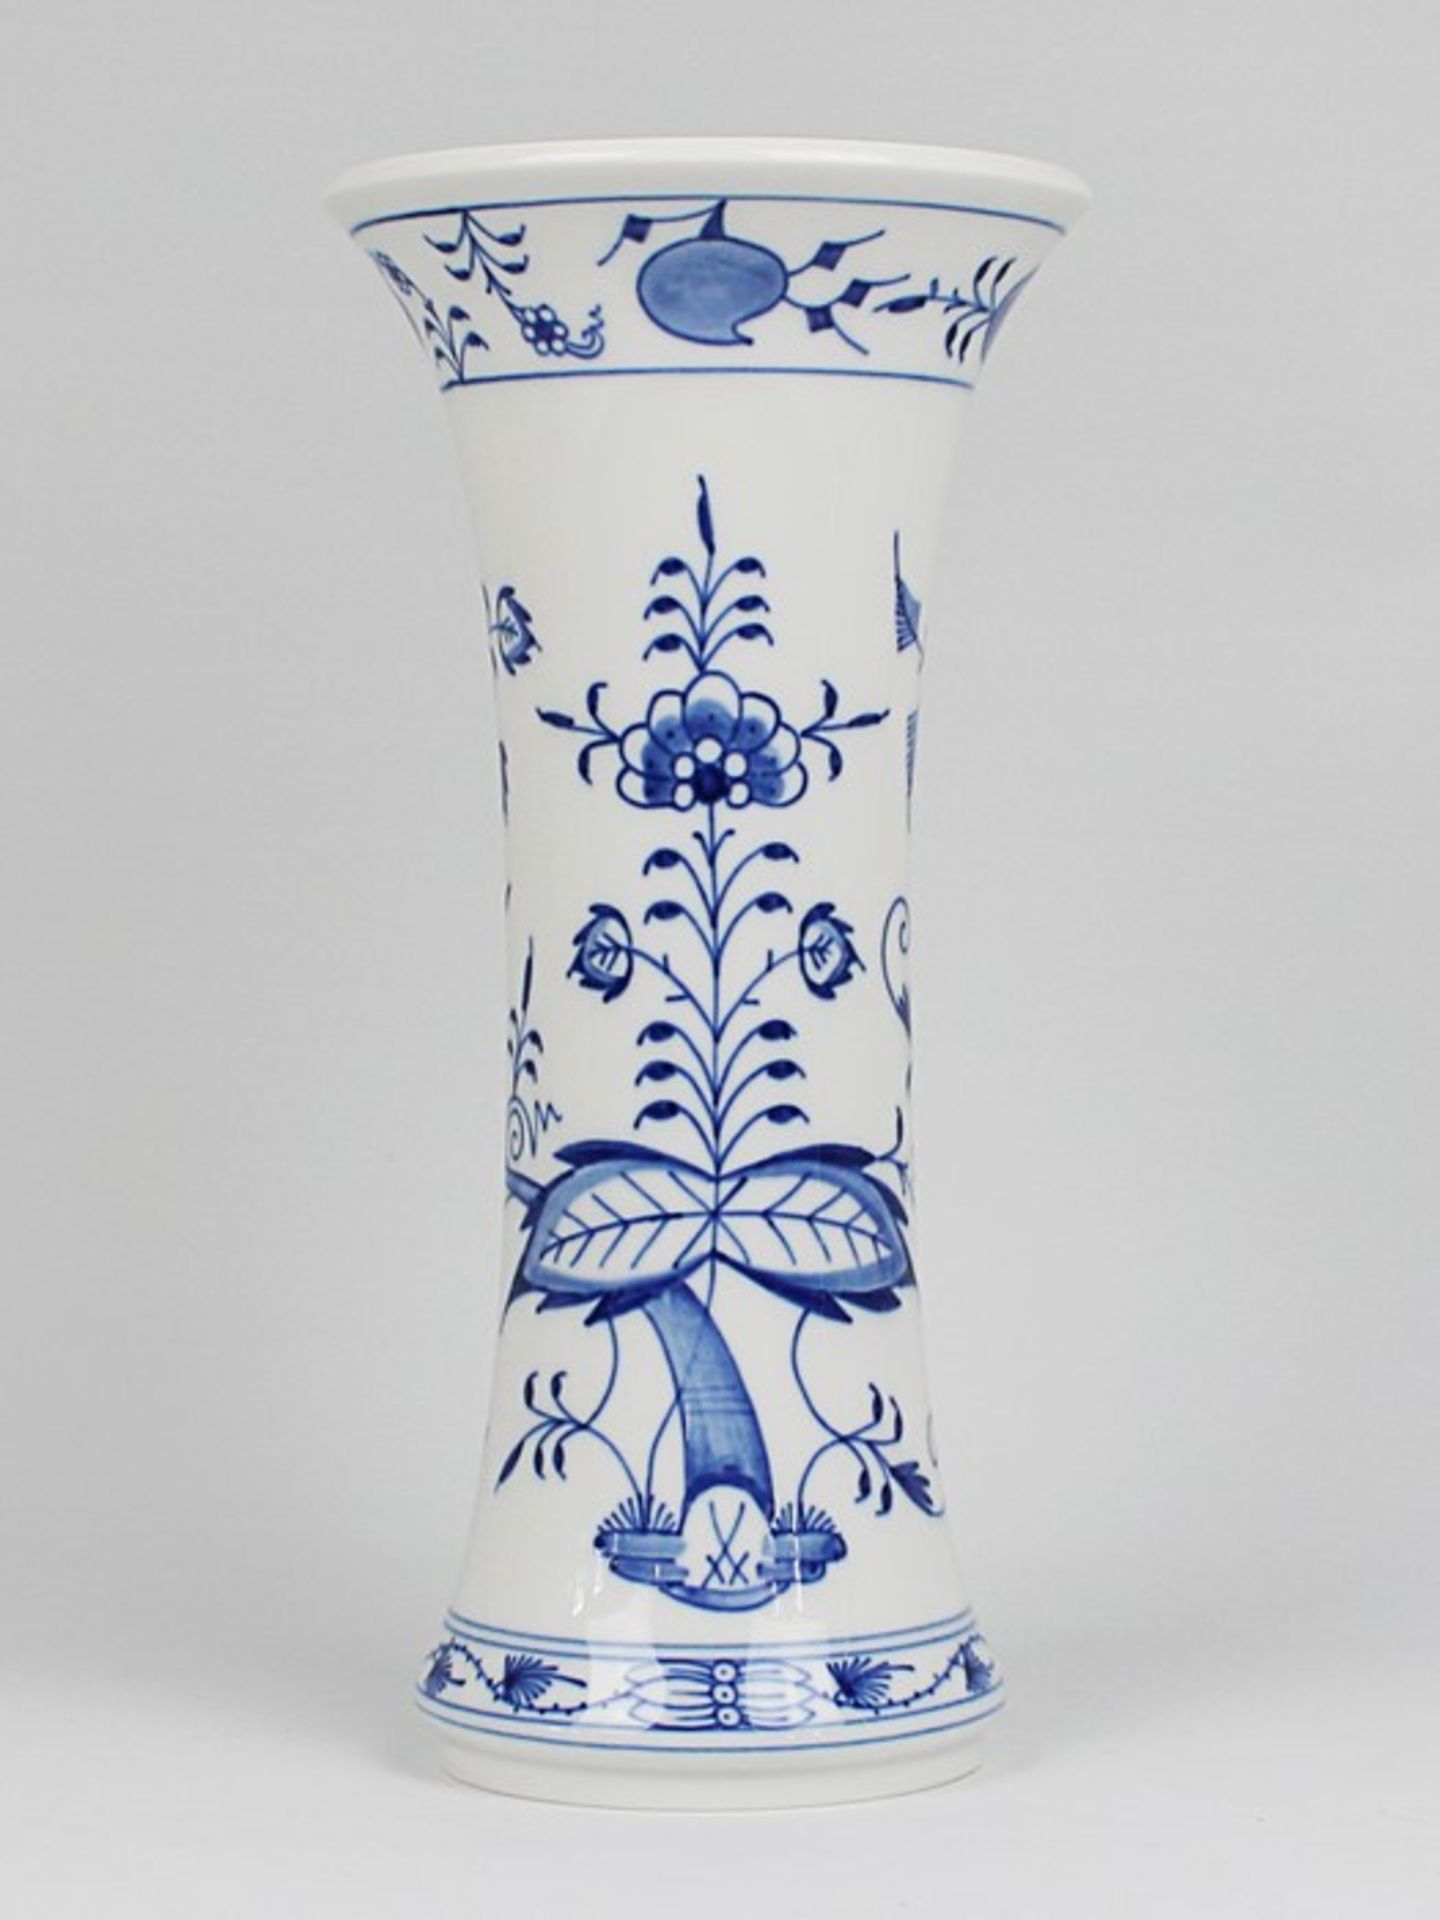 Meissen - Vase2. H. 20. Jh., blaue Zeptermarke, 2. Wahl, Modellnr. 50272, Dekor "blaues